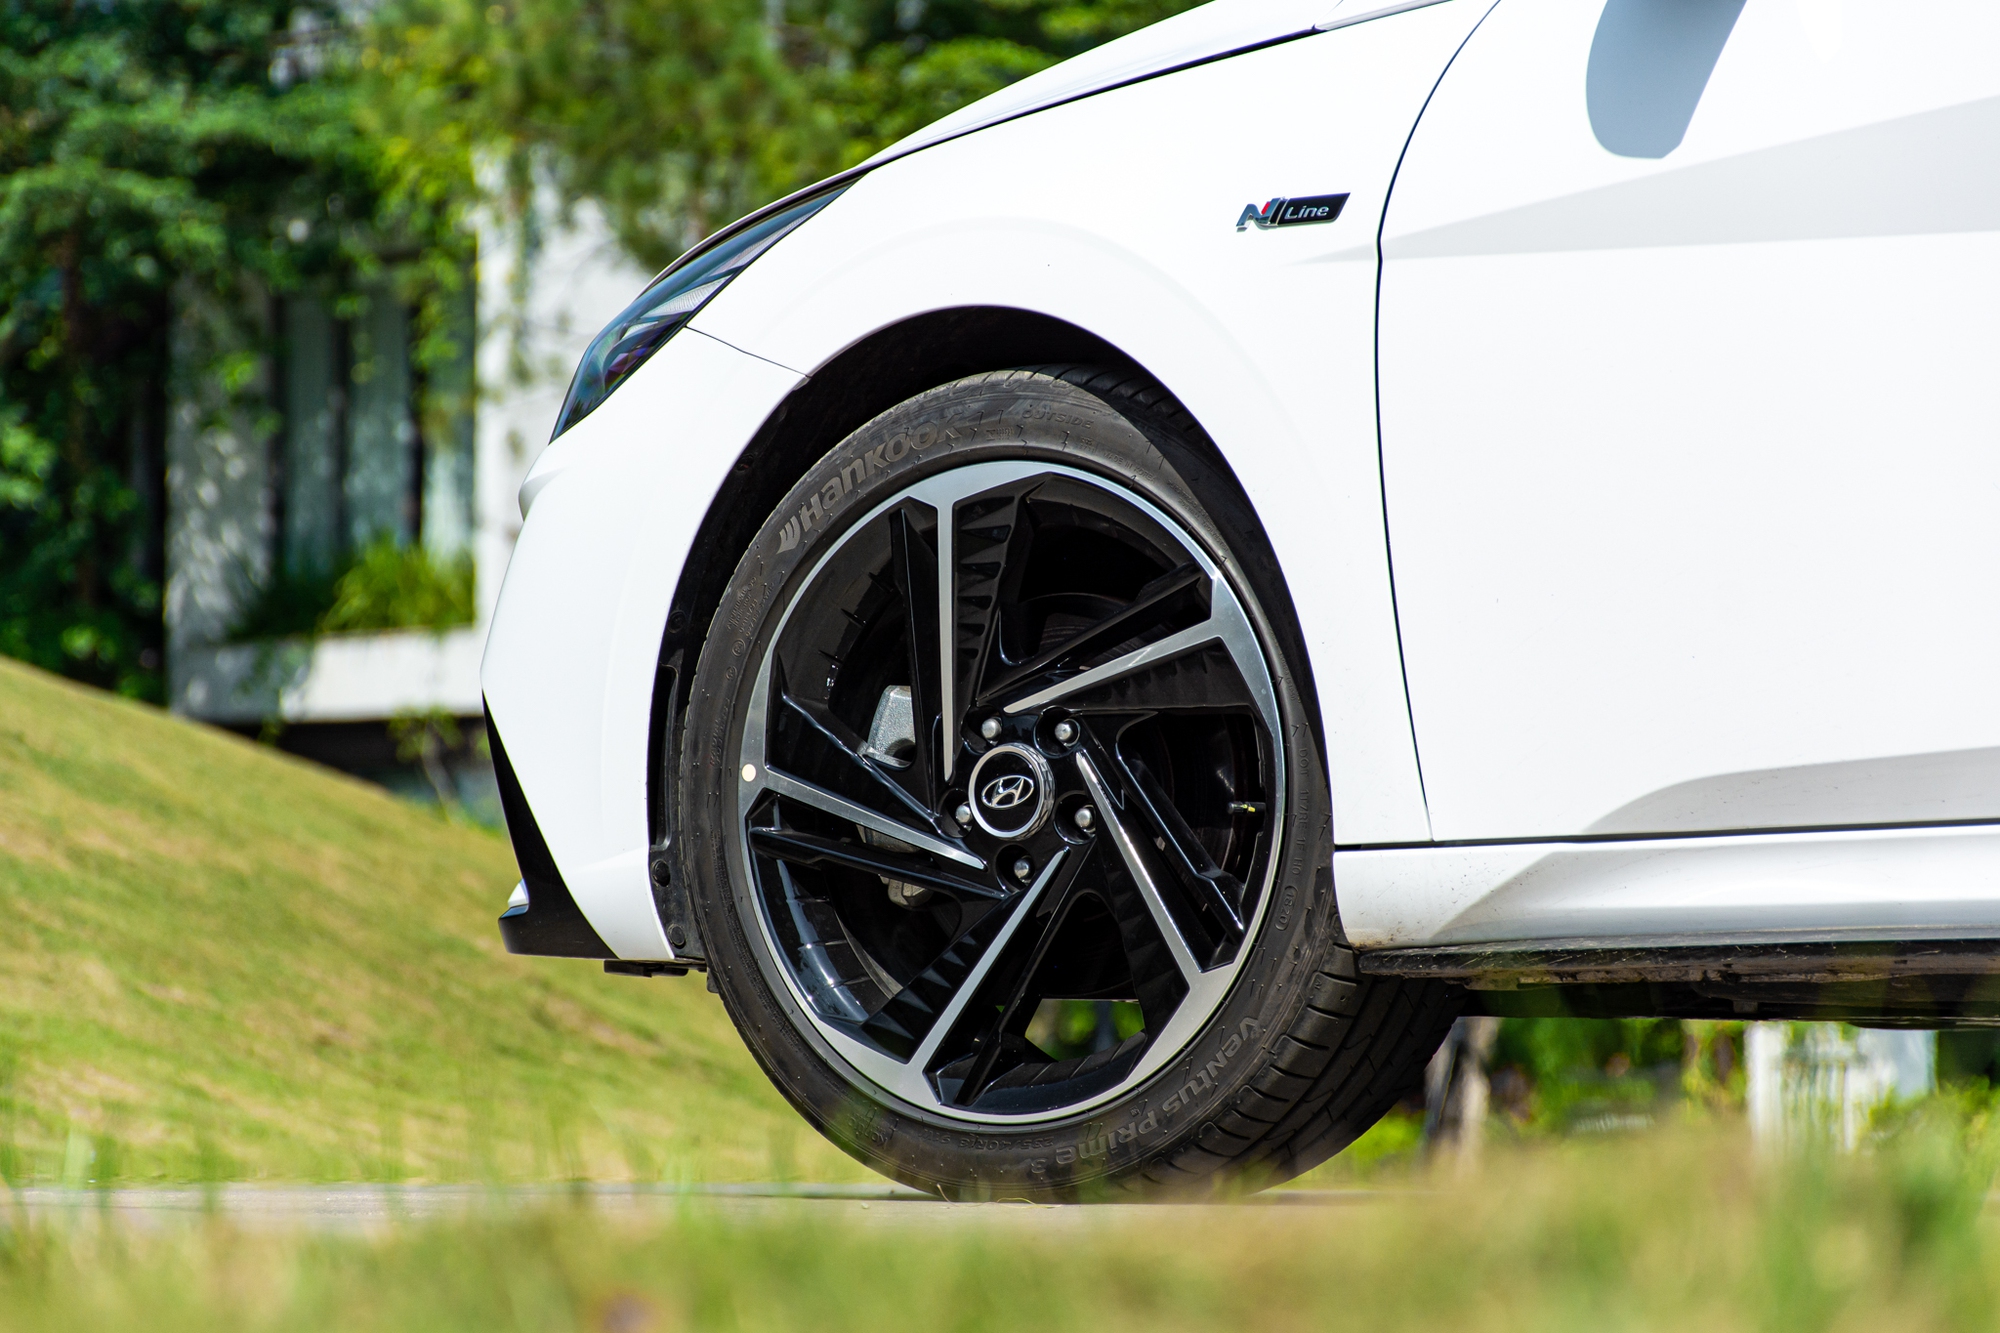 Đánh giá Hyundai Elantra N Line: Xe thể thao giá 799 triệu, mạnh và cảm xúc hơn Civic RS, còn điểm yếu công nghệ - Ảnh 7.